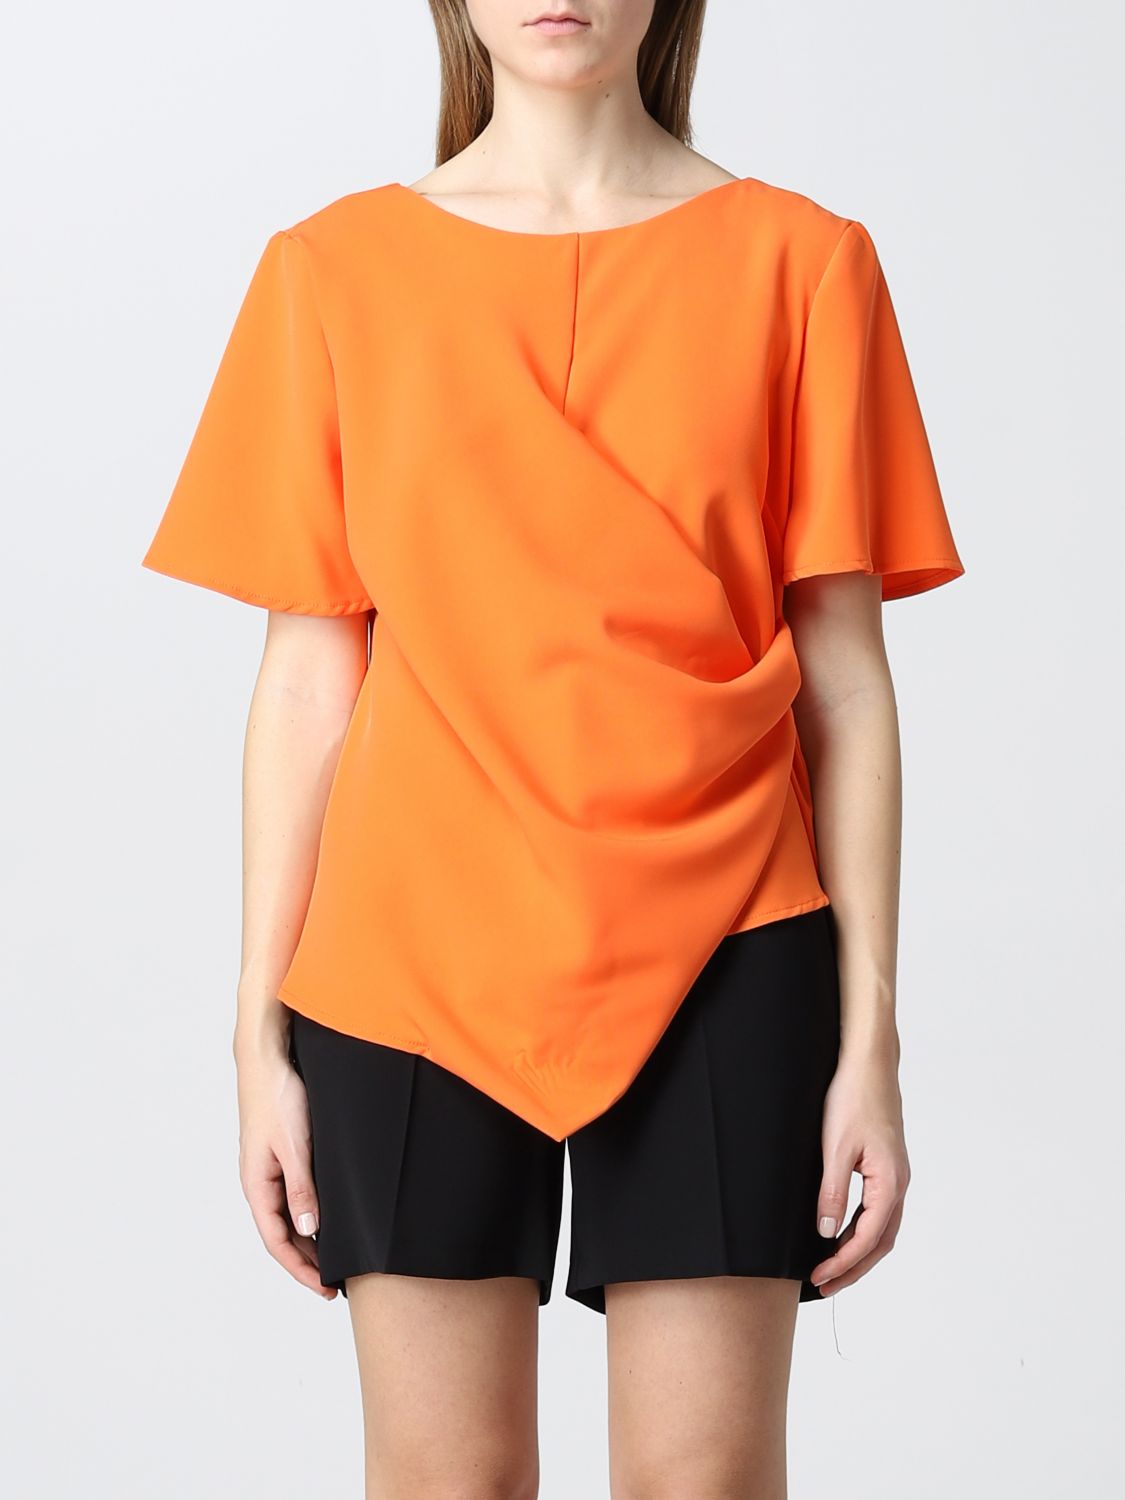 Top Kaos: Top femme Kaos orange 1